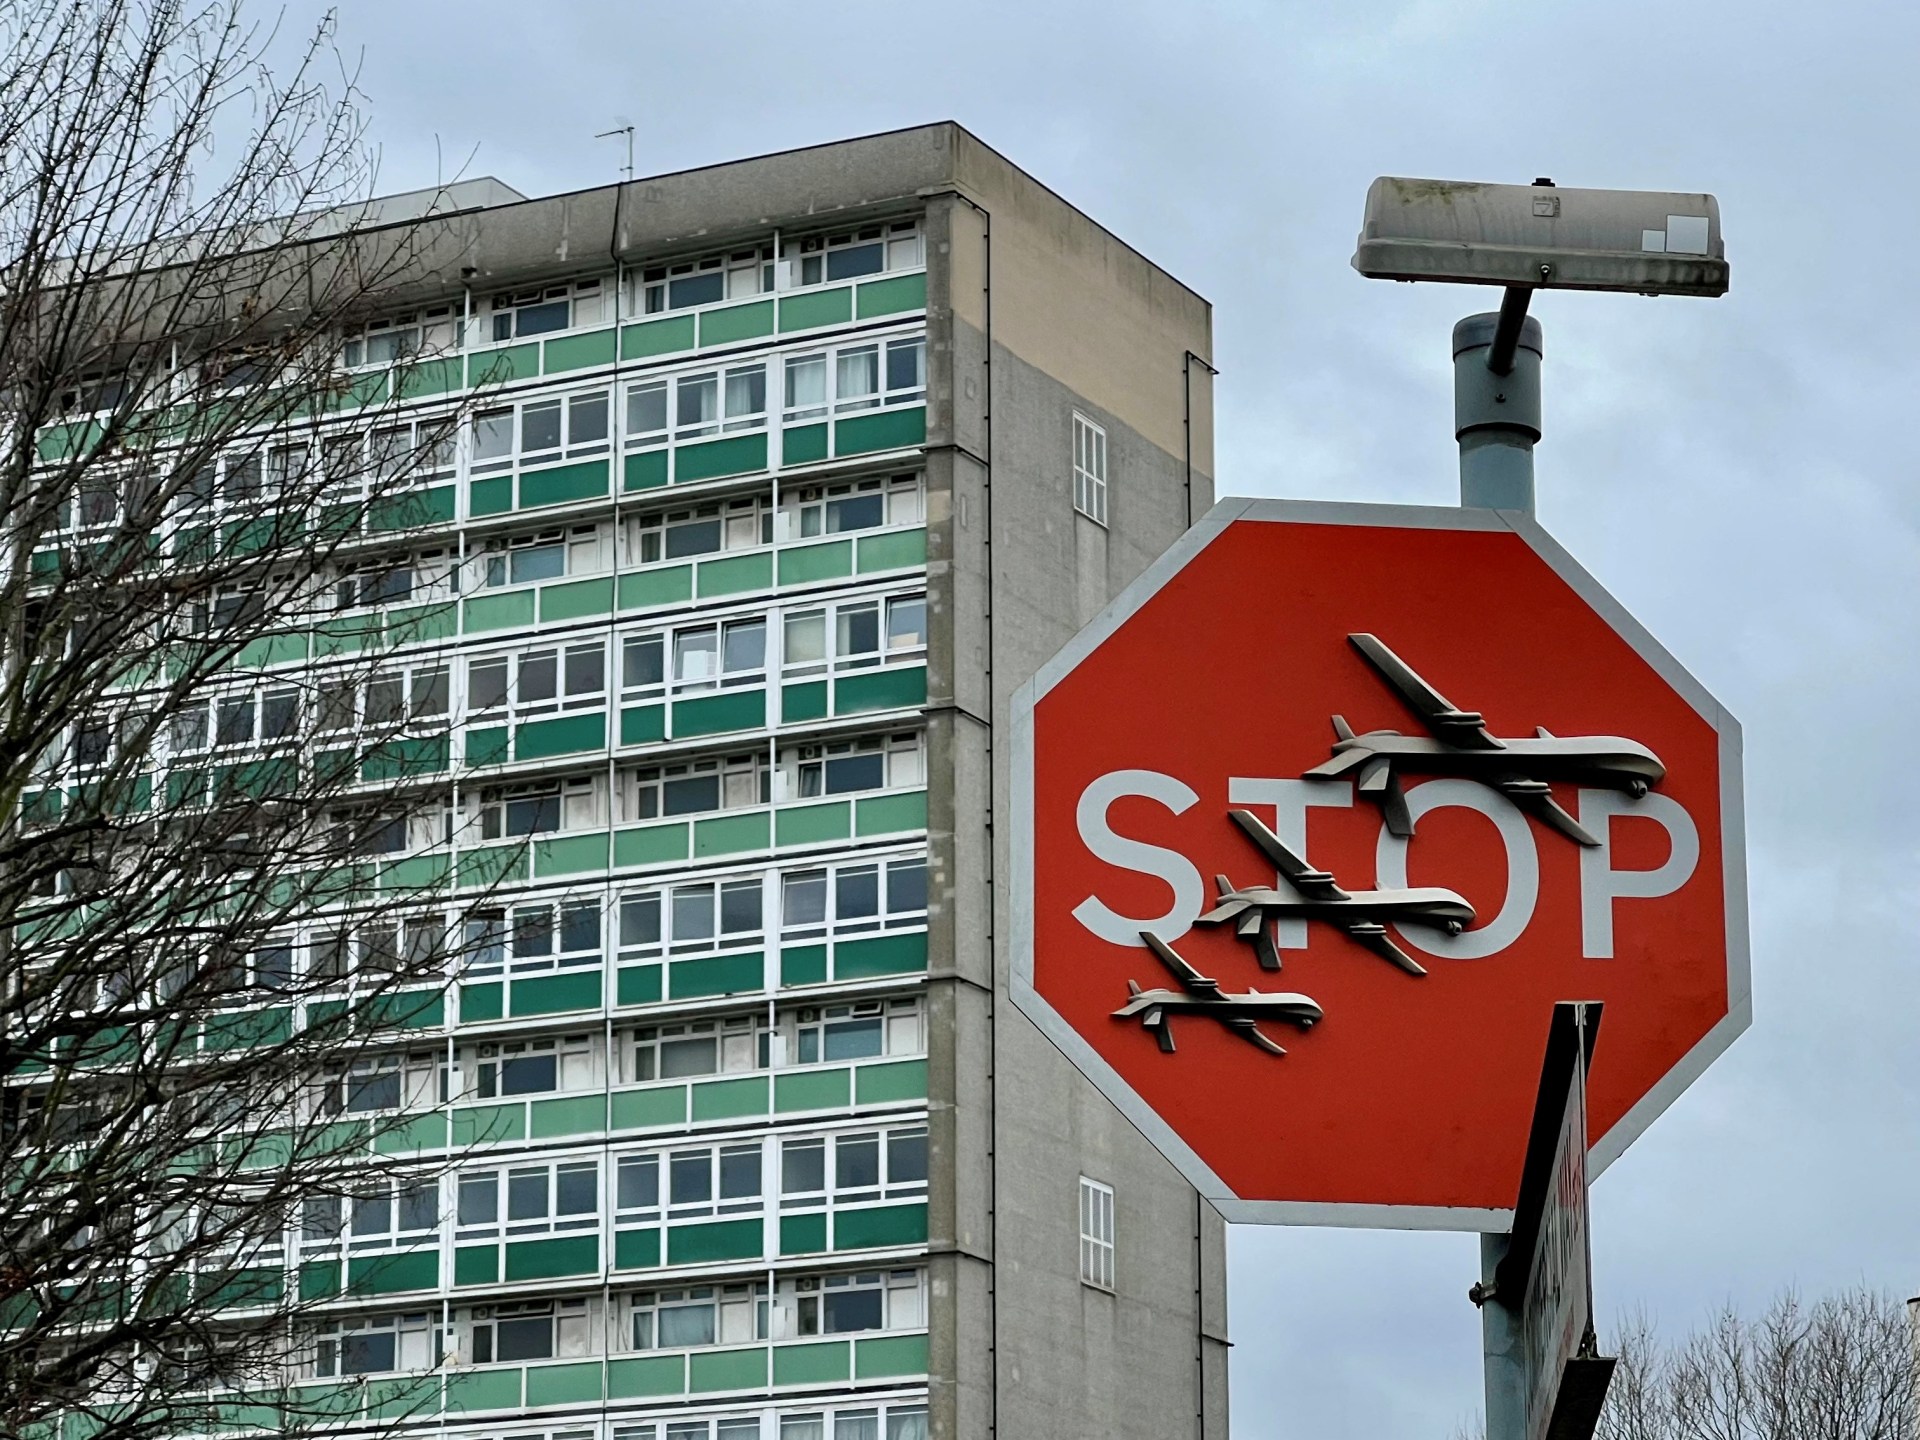 uk-police-arrest-man-after-banksy-artwork-snatched-from-london-street